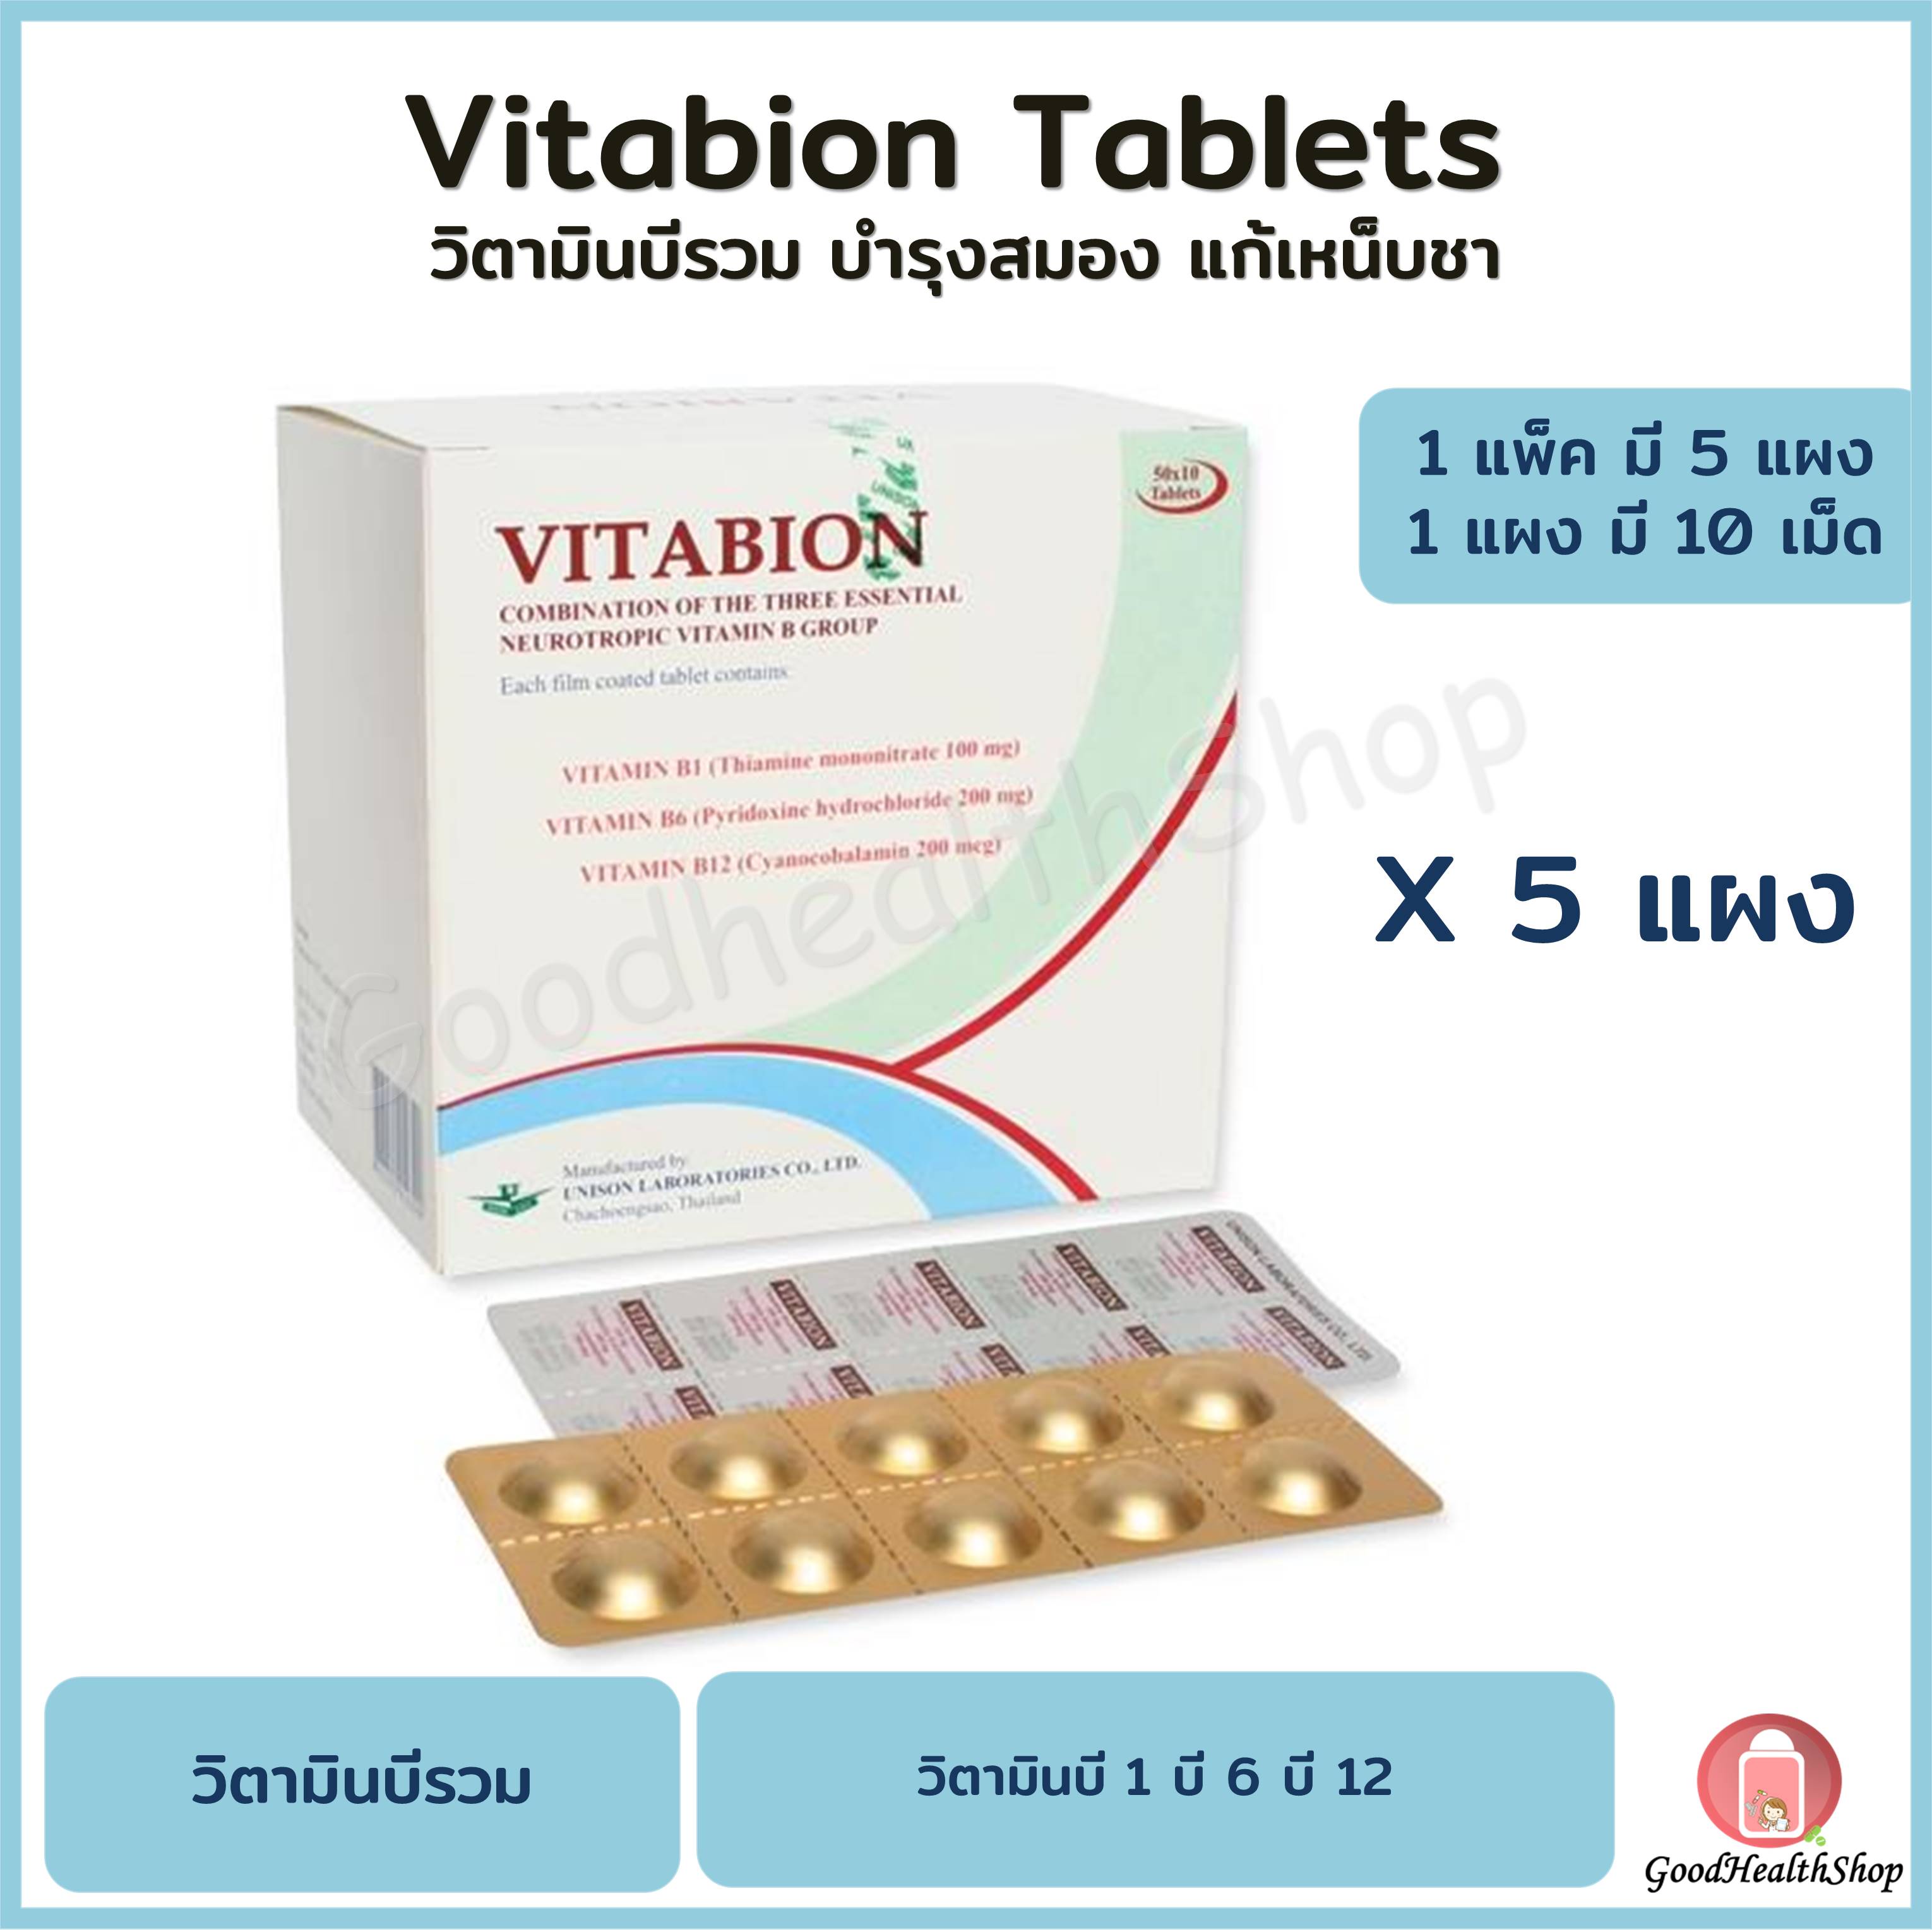 ไวตาเบ ยน Vitabion ว ตาม นบ รวม บ 1 บ 6 บ 12 ส ตรเข มข น 1 แผง ม 10 เม ด 1 แพ คม 5 แผง พร อมส ง ของแท จากร านยา Lazada Co Th